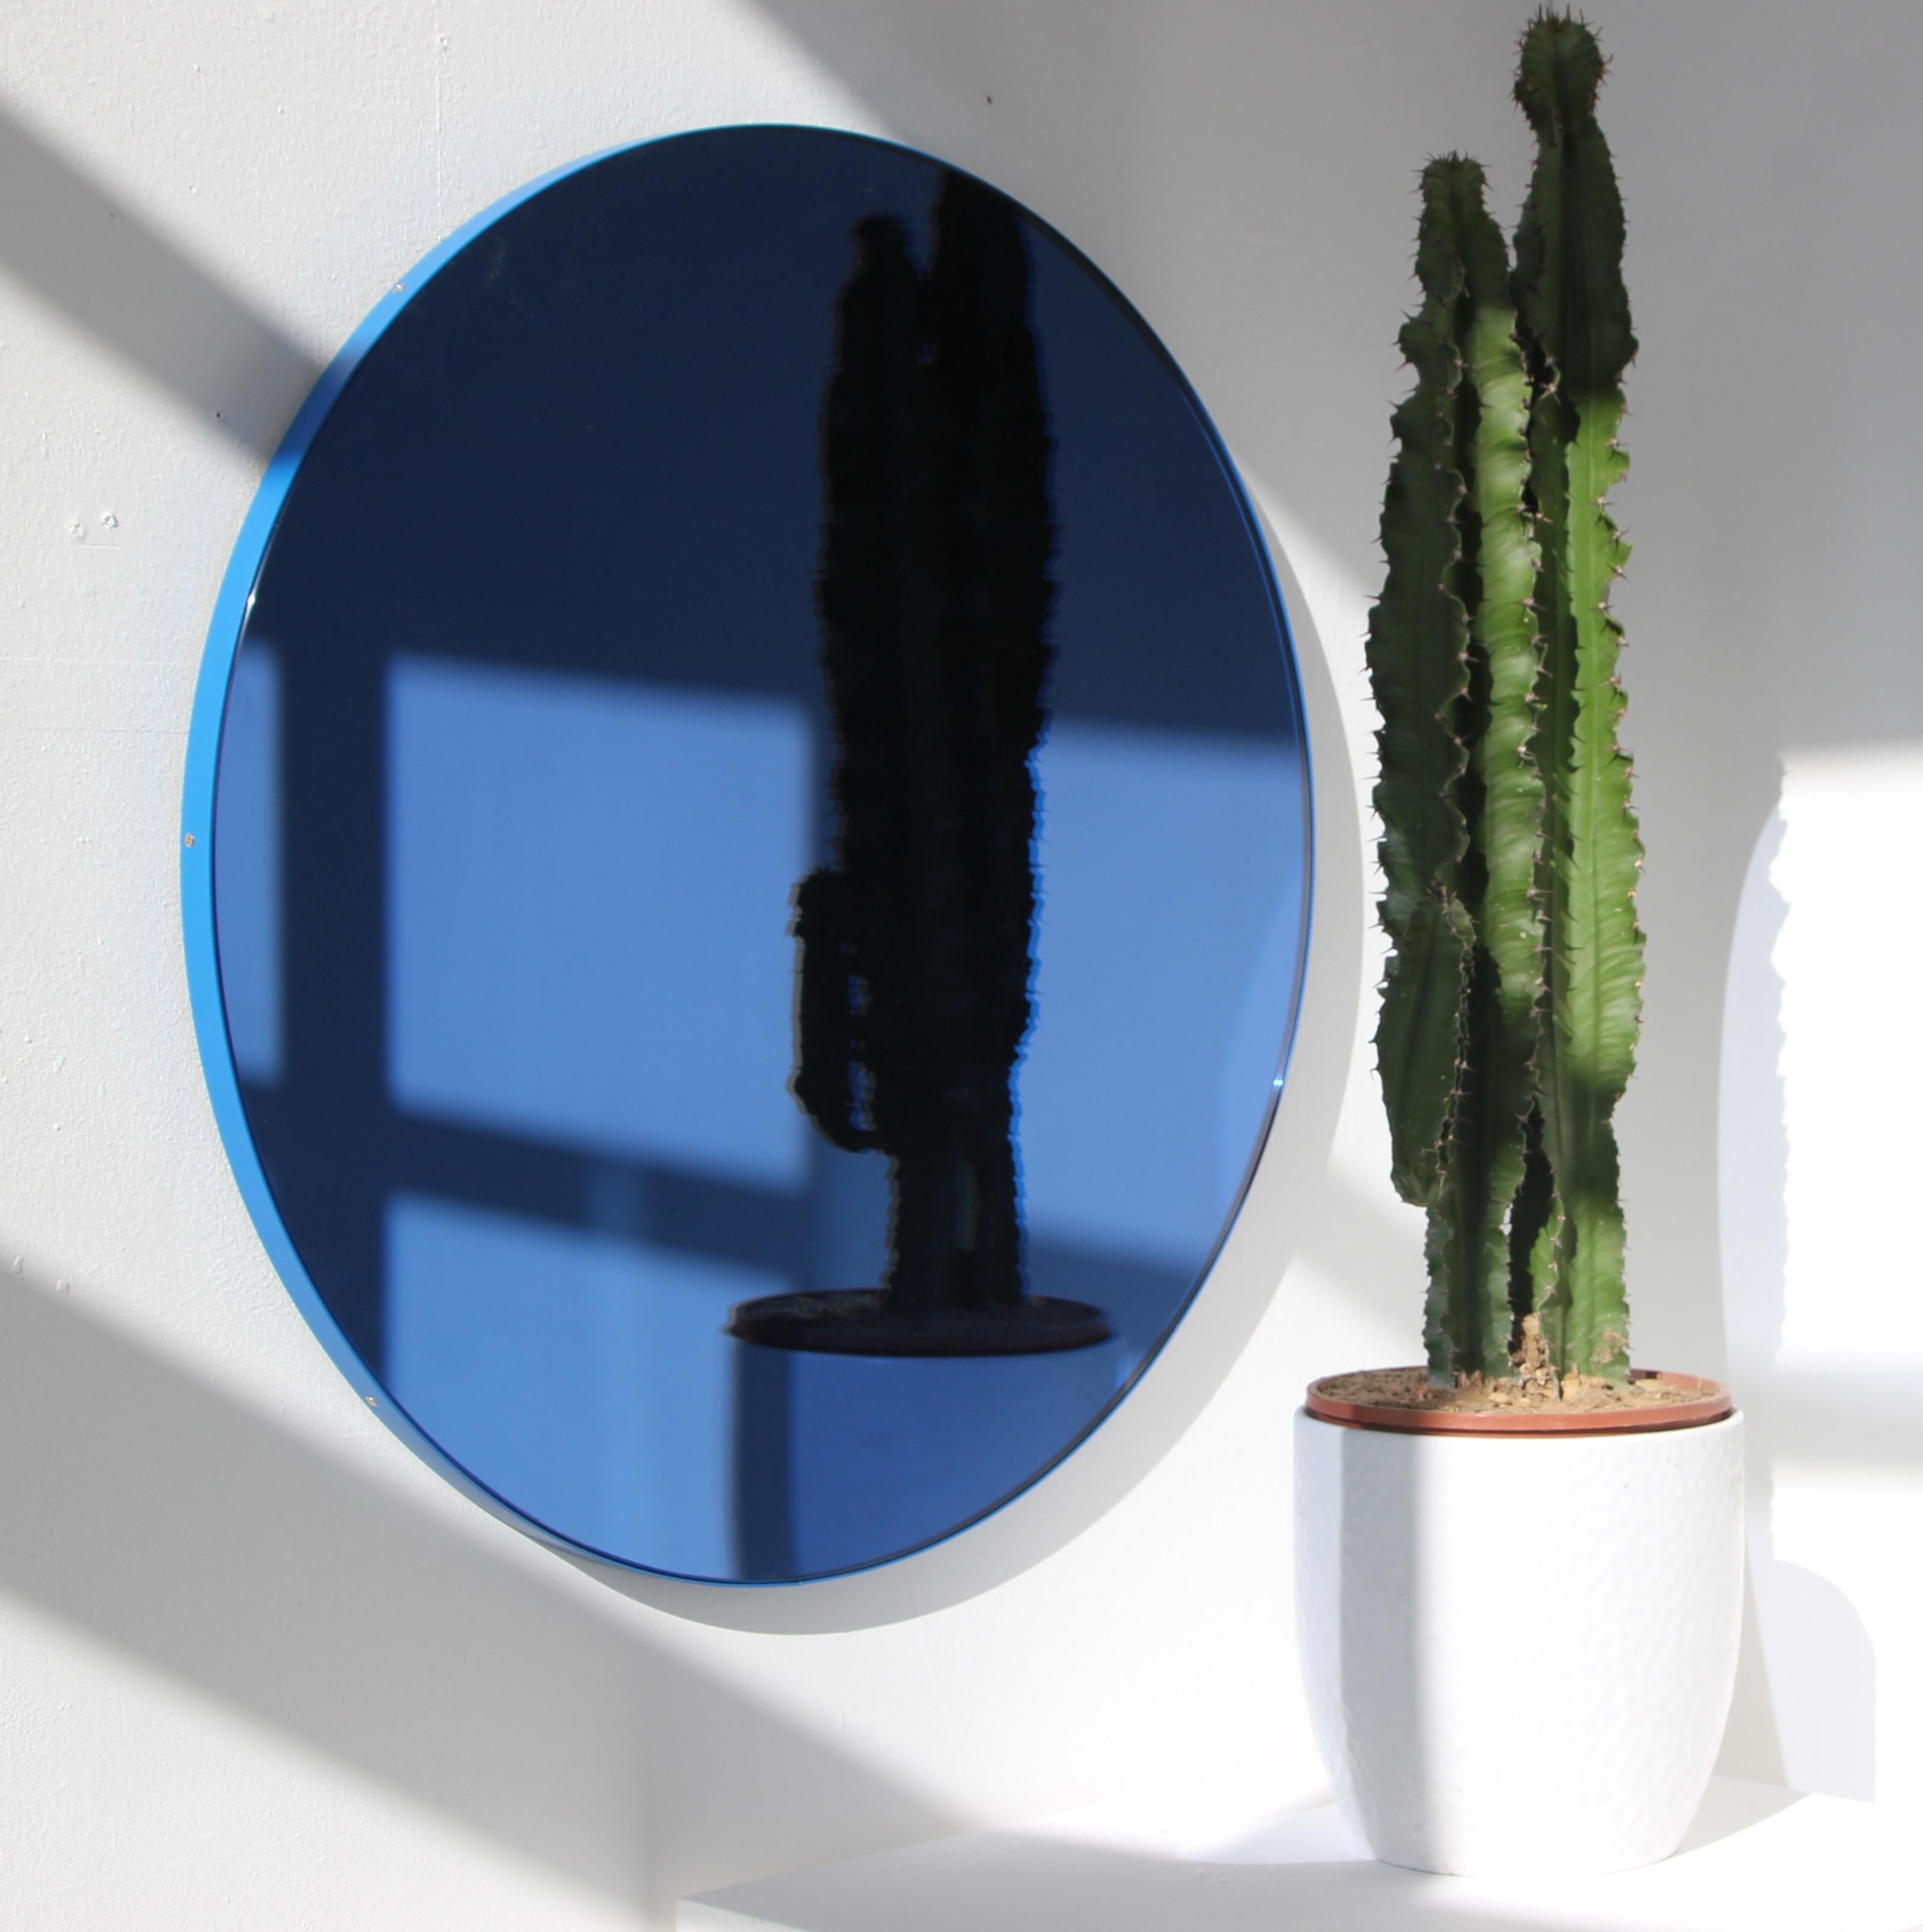 Miroir rond moderne teinté de bleu avec un cadre bleu vibrant en aluminium peint par poudrage. Conçu et fabriqué à la main à Londres, au Royaume-Uni.

Les miroirs de taille moyenne, grande et extra-large (60, 80 et 100 cm) sont équipés d'un